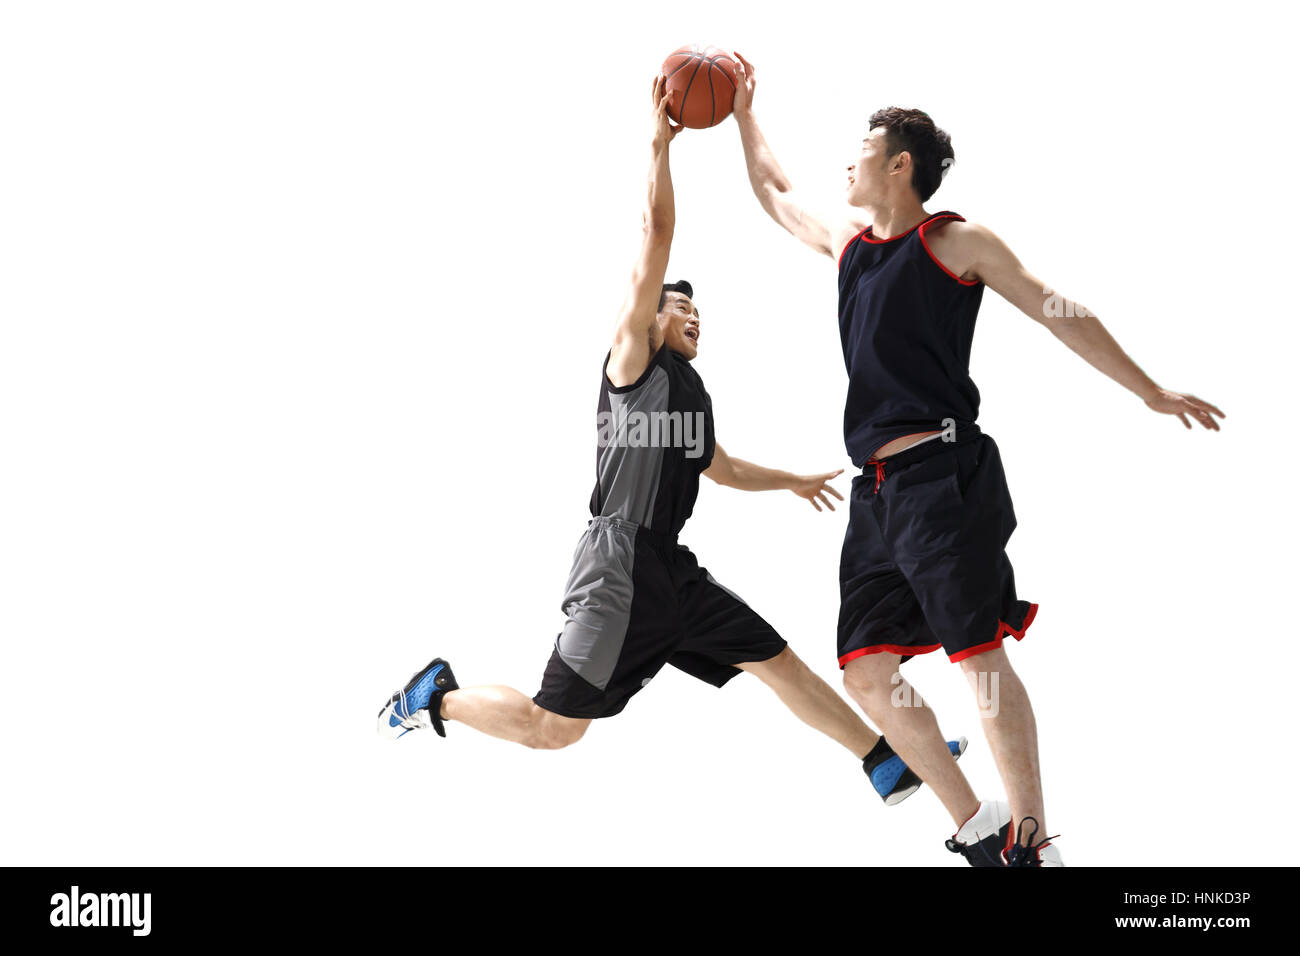 Basketball players to play basketball Stock Photo